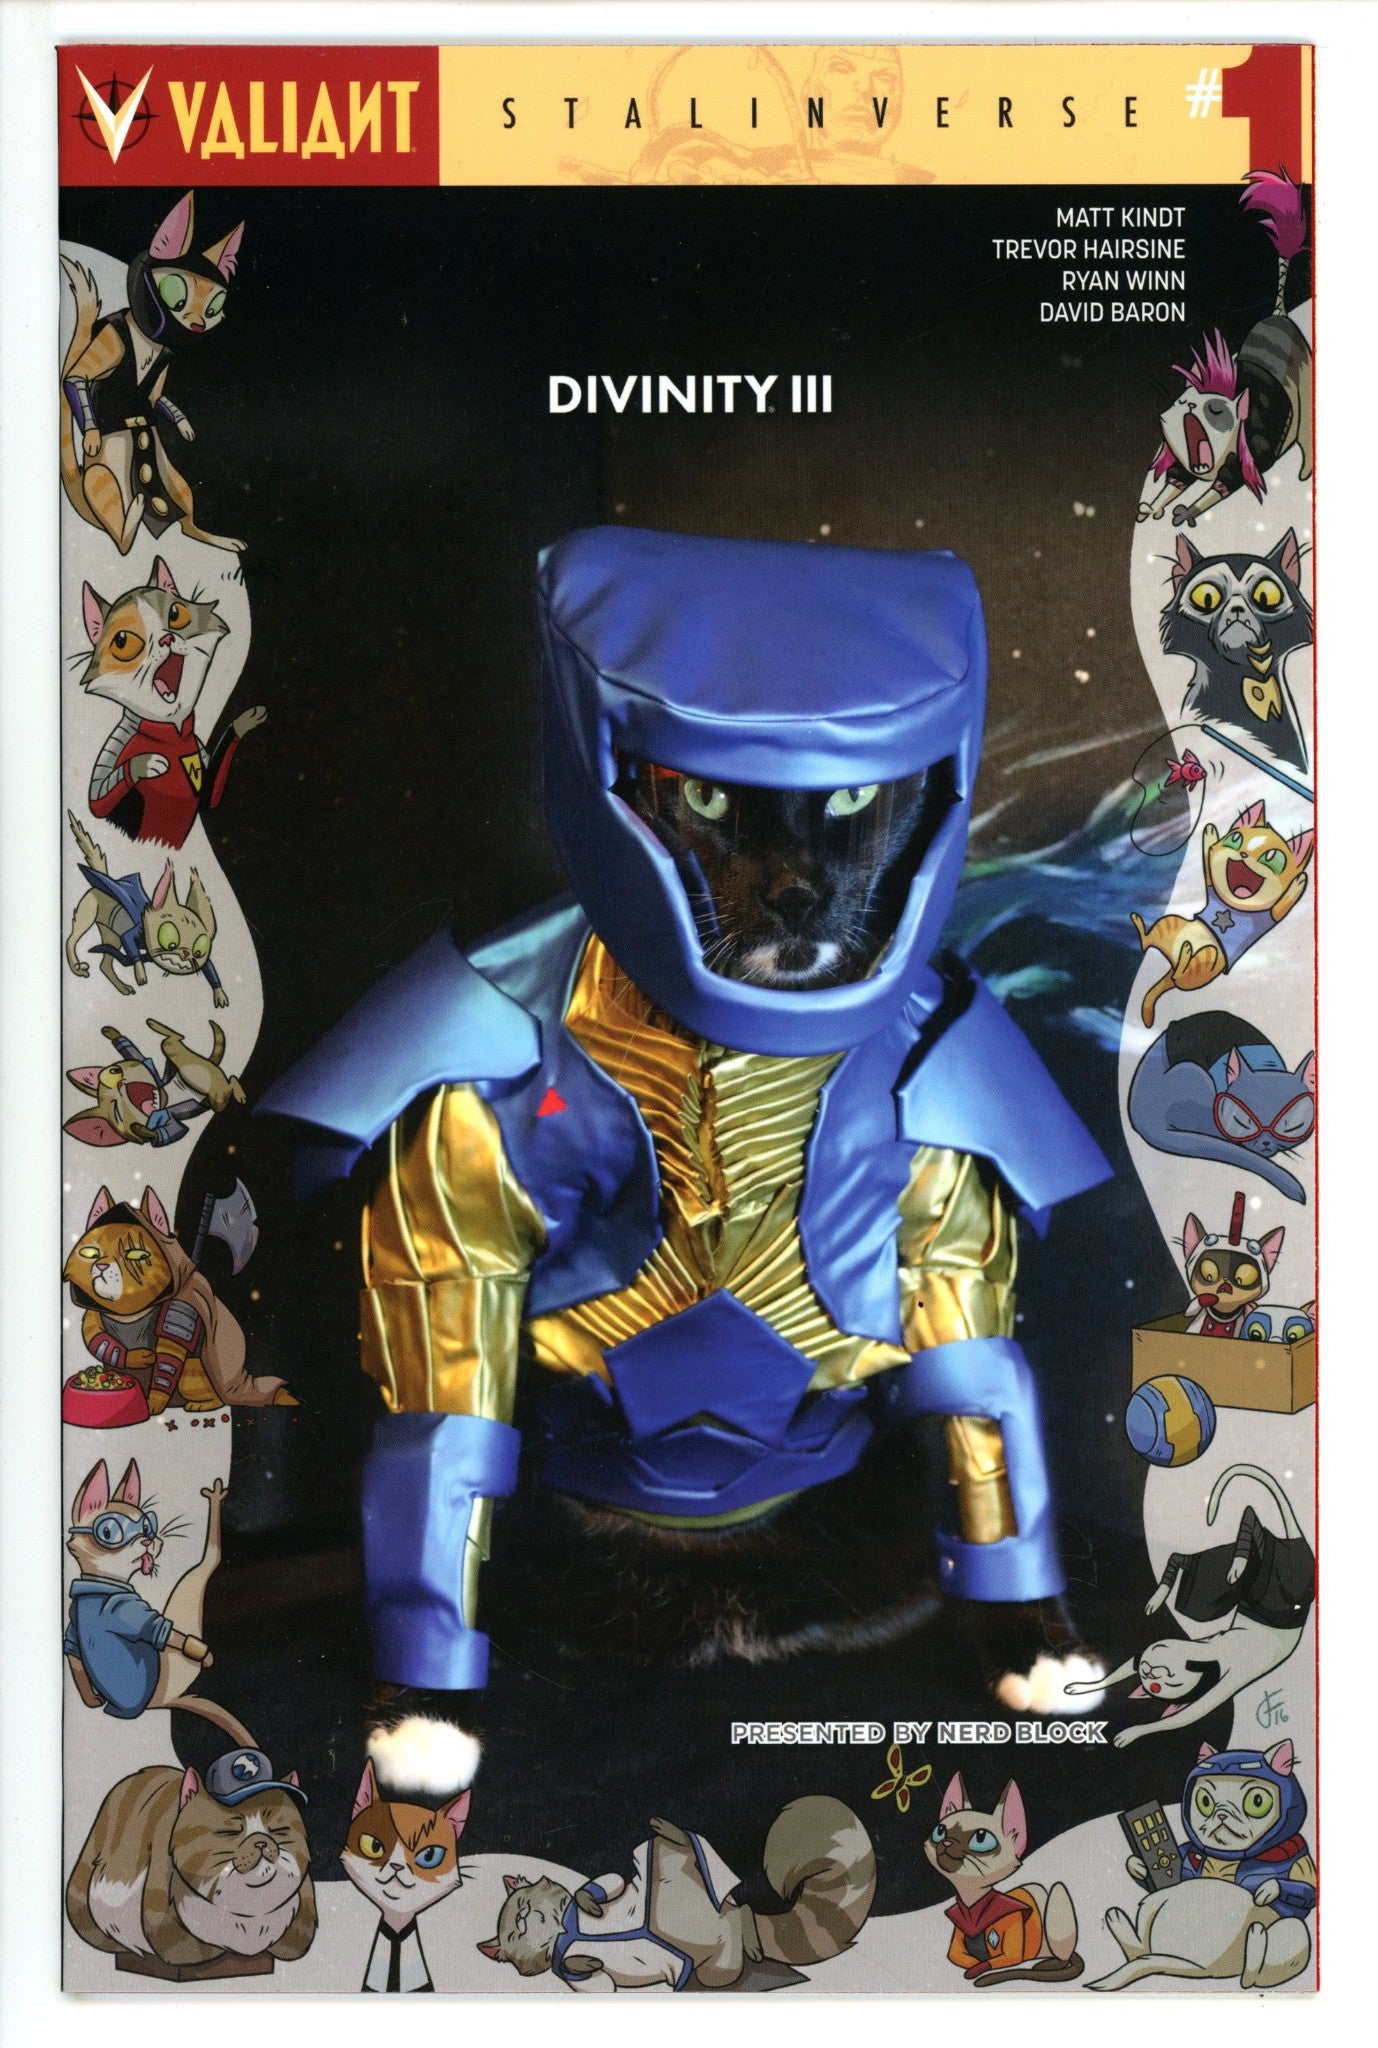 Divinity III: Stalinverse 1 Photo Nerd Block Exclusive Variant (2016)